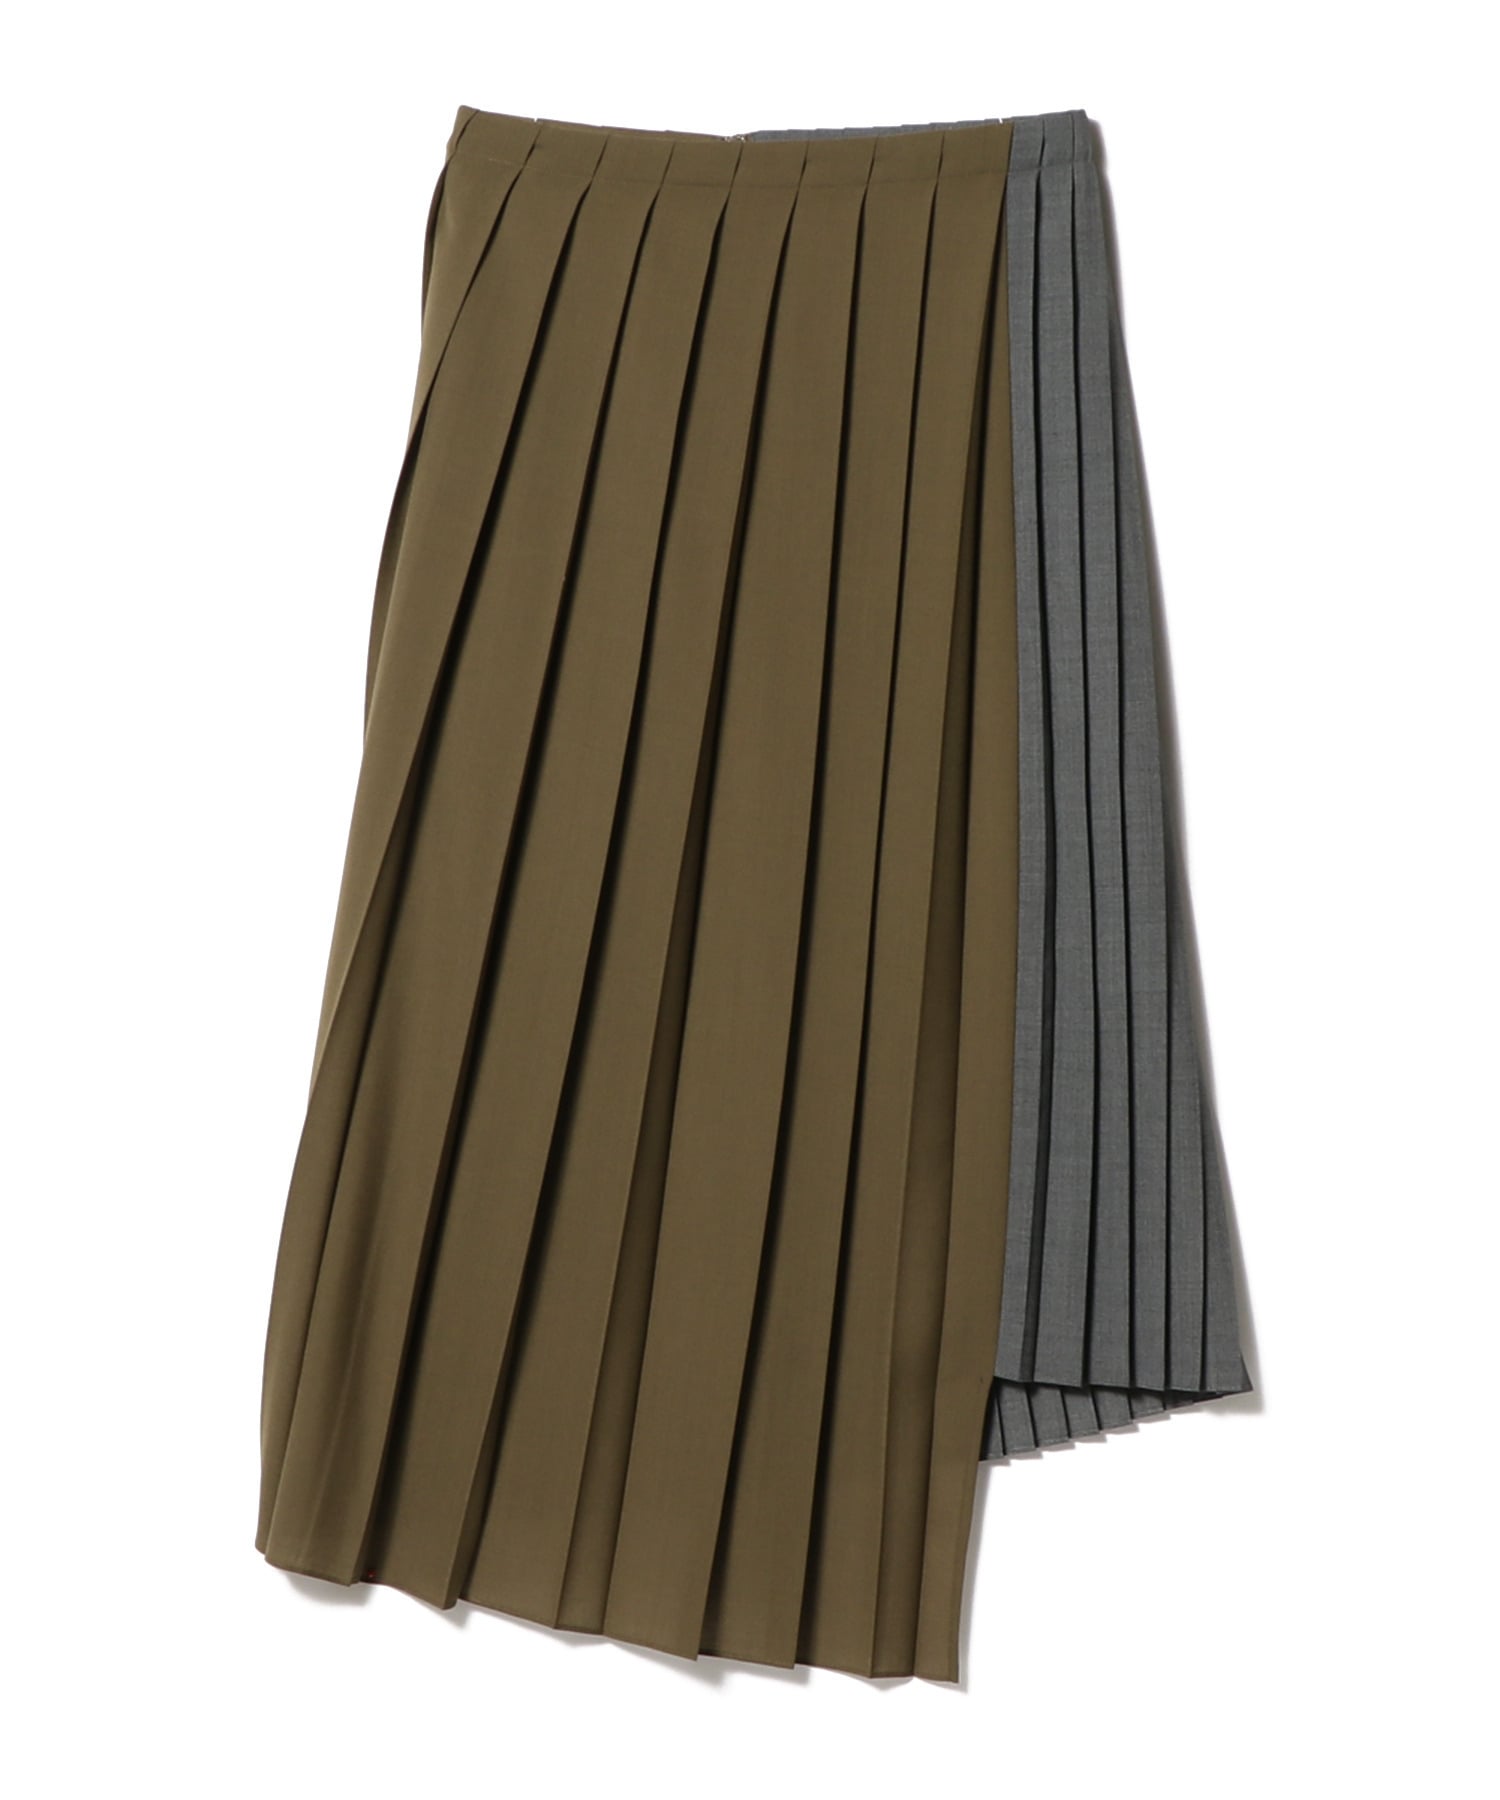 【送料無料】sacai（サカイ）サイドプリーツスカート ひざ丈スカート 最も完璧な